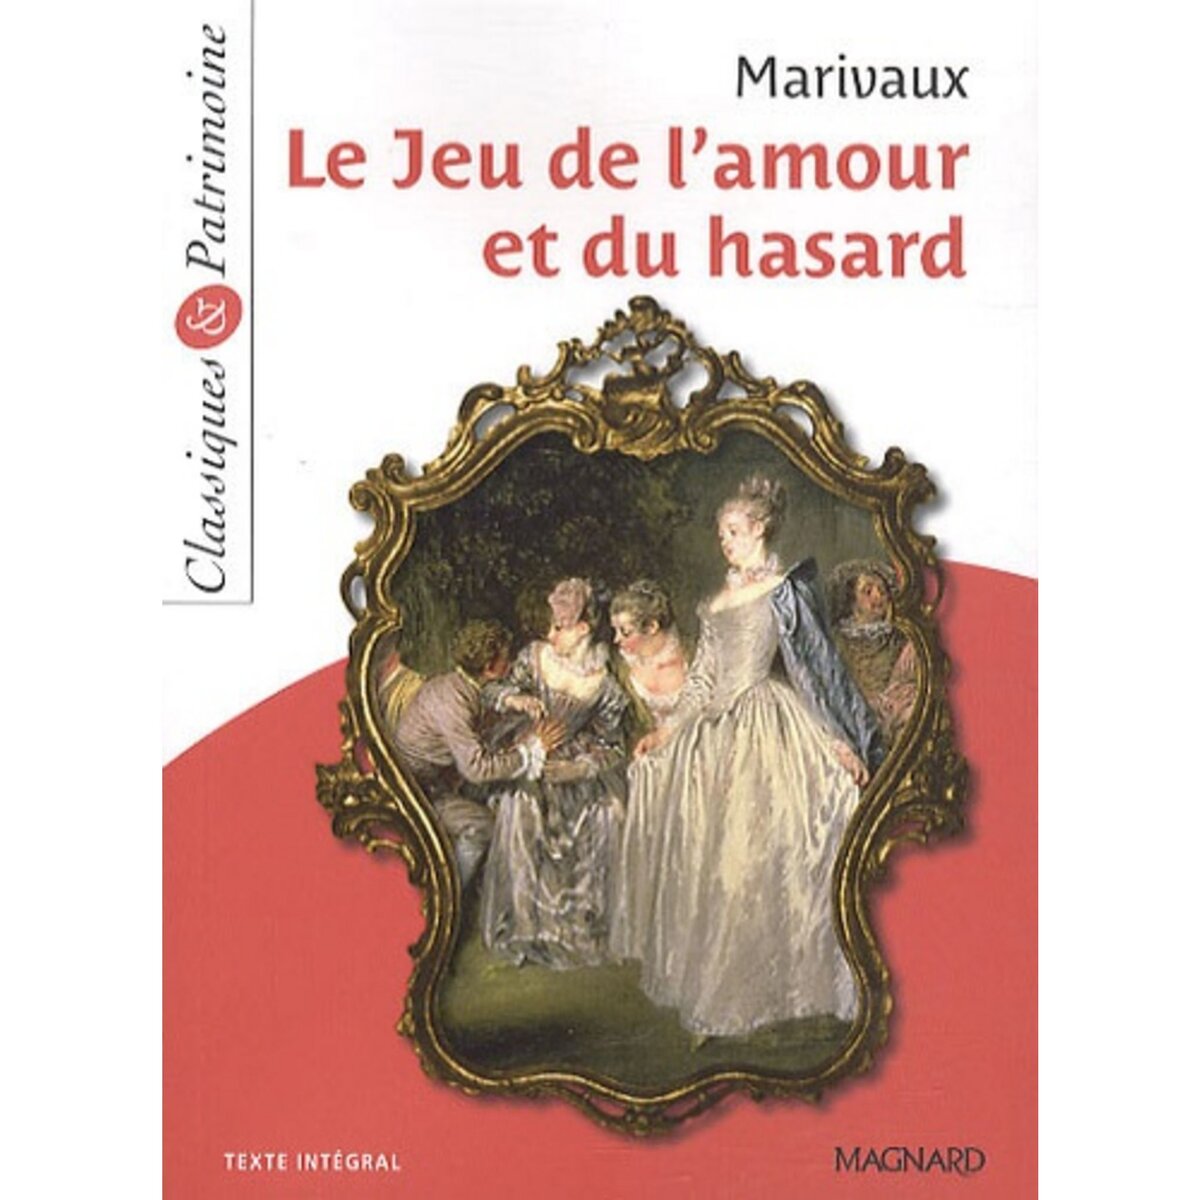  LE JEU DE L'AMOUR ET DU HASARD, Marivaux Pierre de